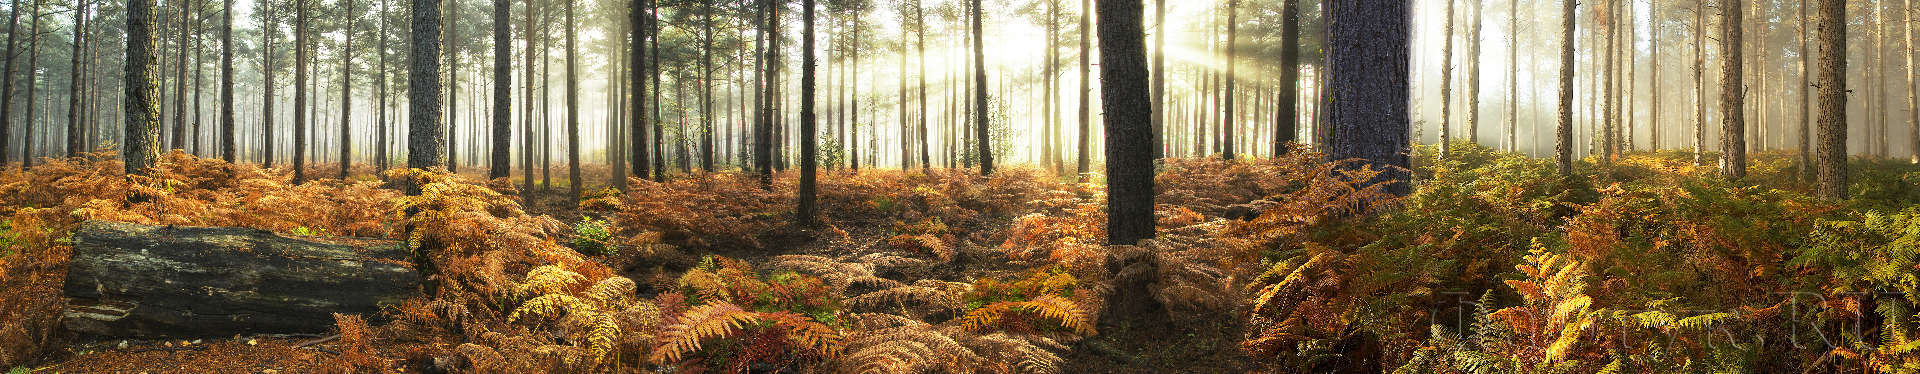 Осенний пейзаж в лесу